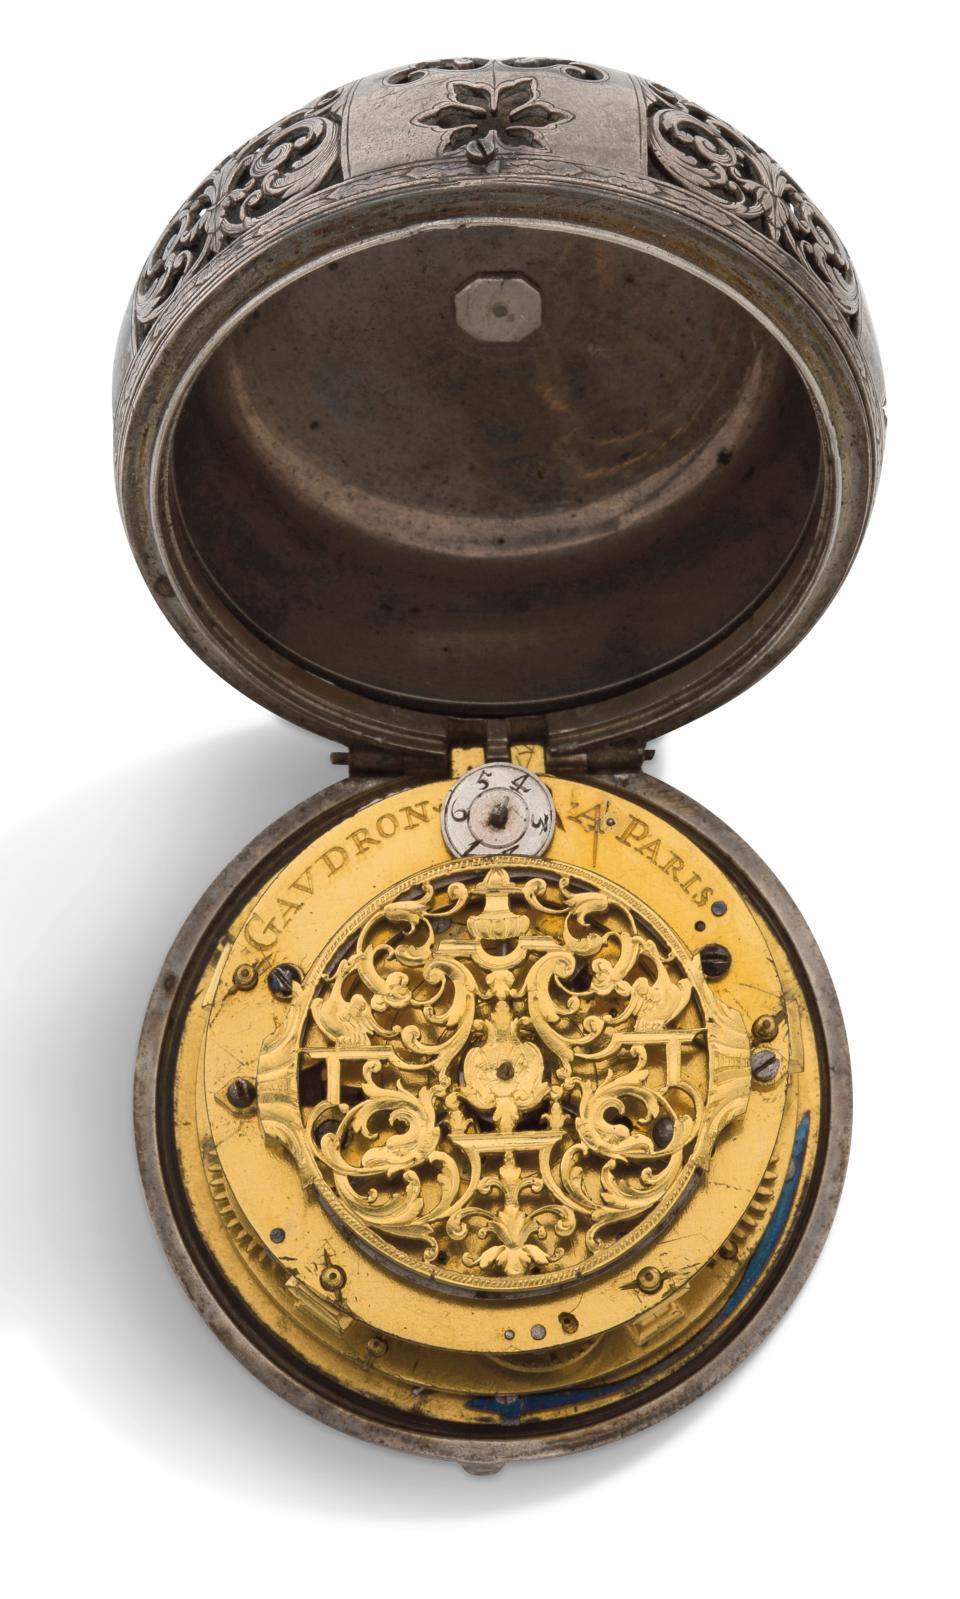 Gaudron, Paris, fin du XVIIe siècle, montre oignon en argent avec sonnerie et fonction réveil, décor de rinceaux, mouvement mécanique avec